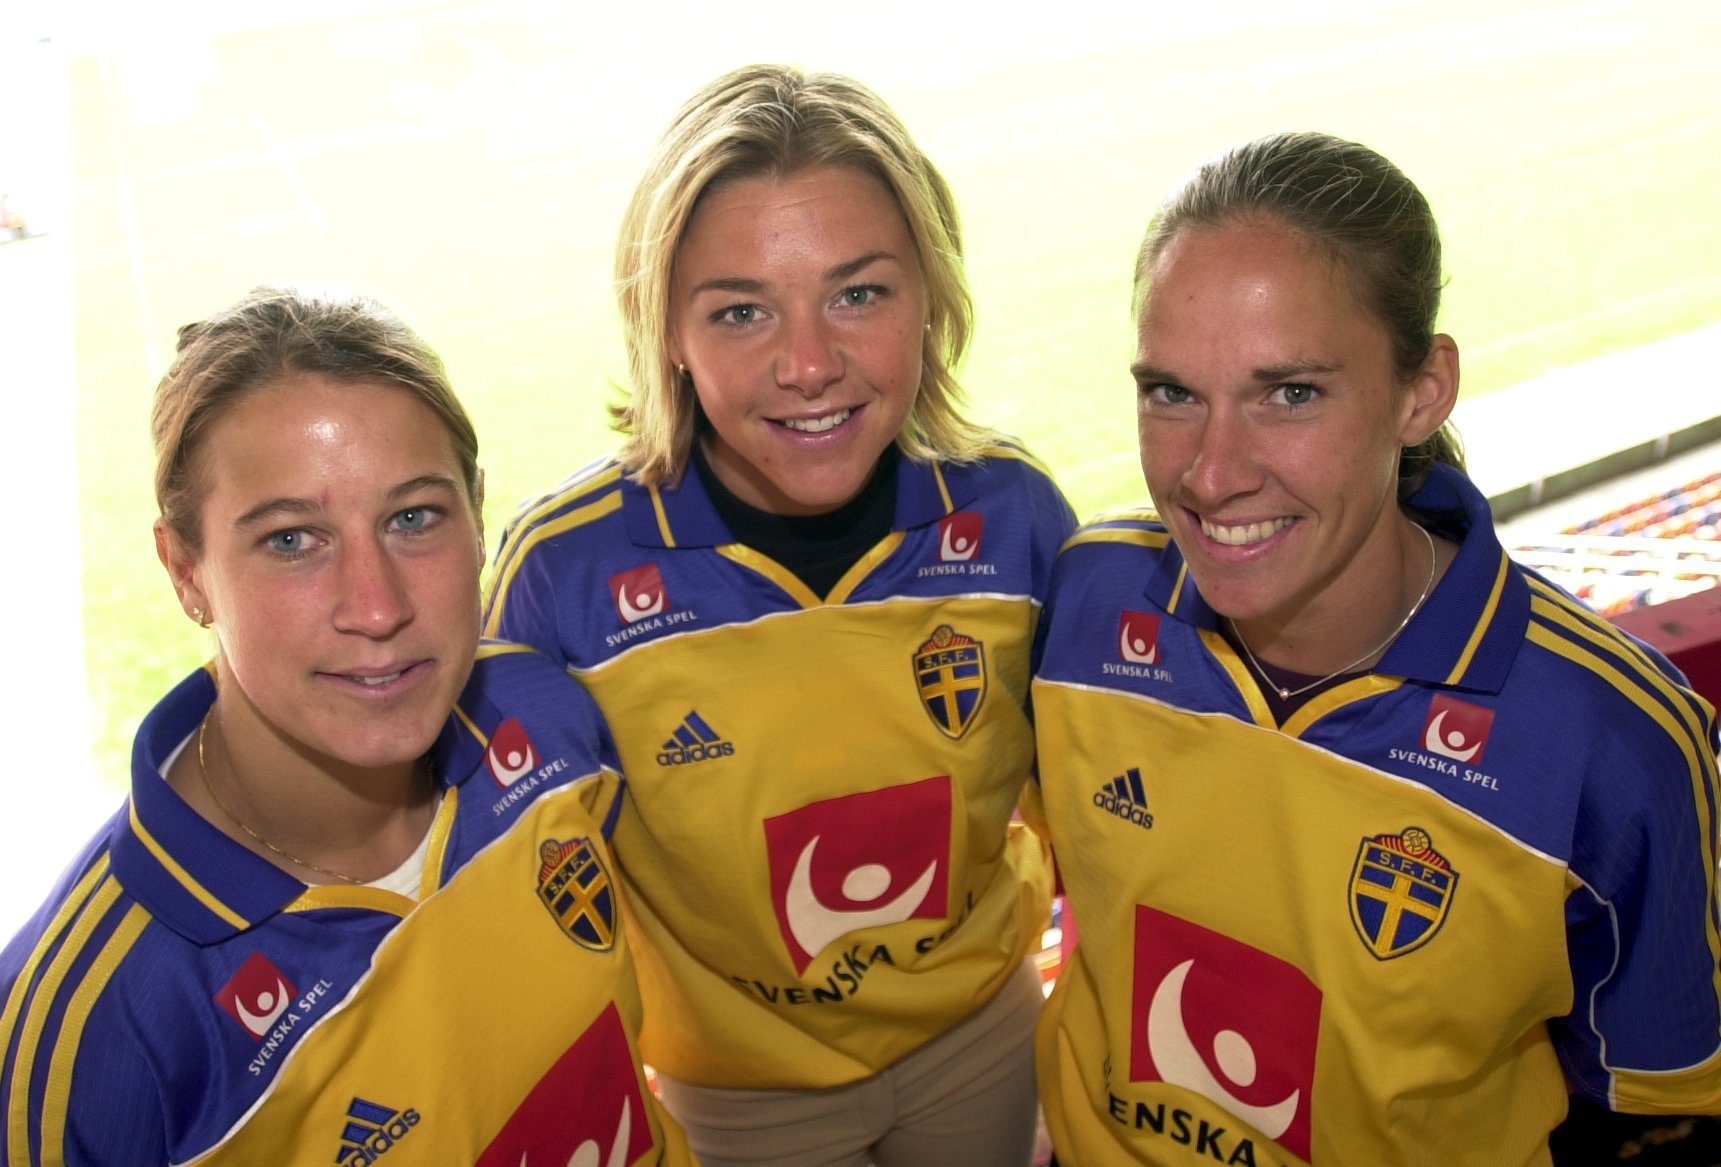 Snacka om att åren flyger förbi. År 2001 presenterar dåvarande förbundskapten Marika Domansky Lyfors  upp sina tre nykomlingar i truppen. Från vänster: Elin Flyborg, Tina Nordlund och Linda Fagerström. I bakgrunden syns Råsundas gräsmatta.